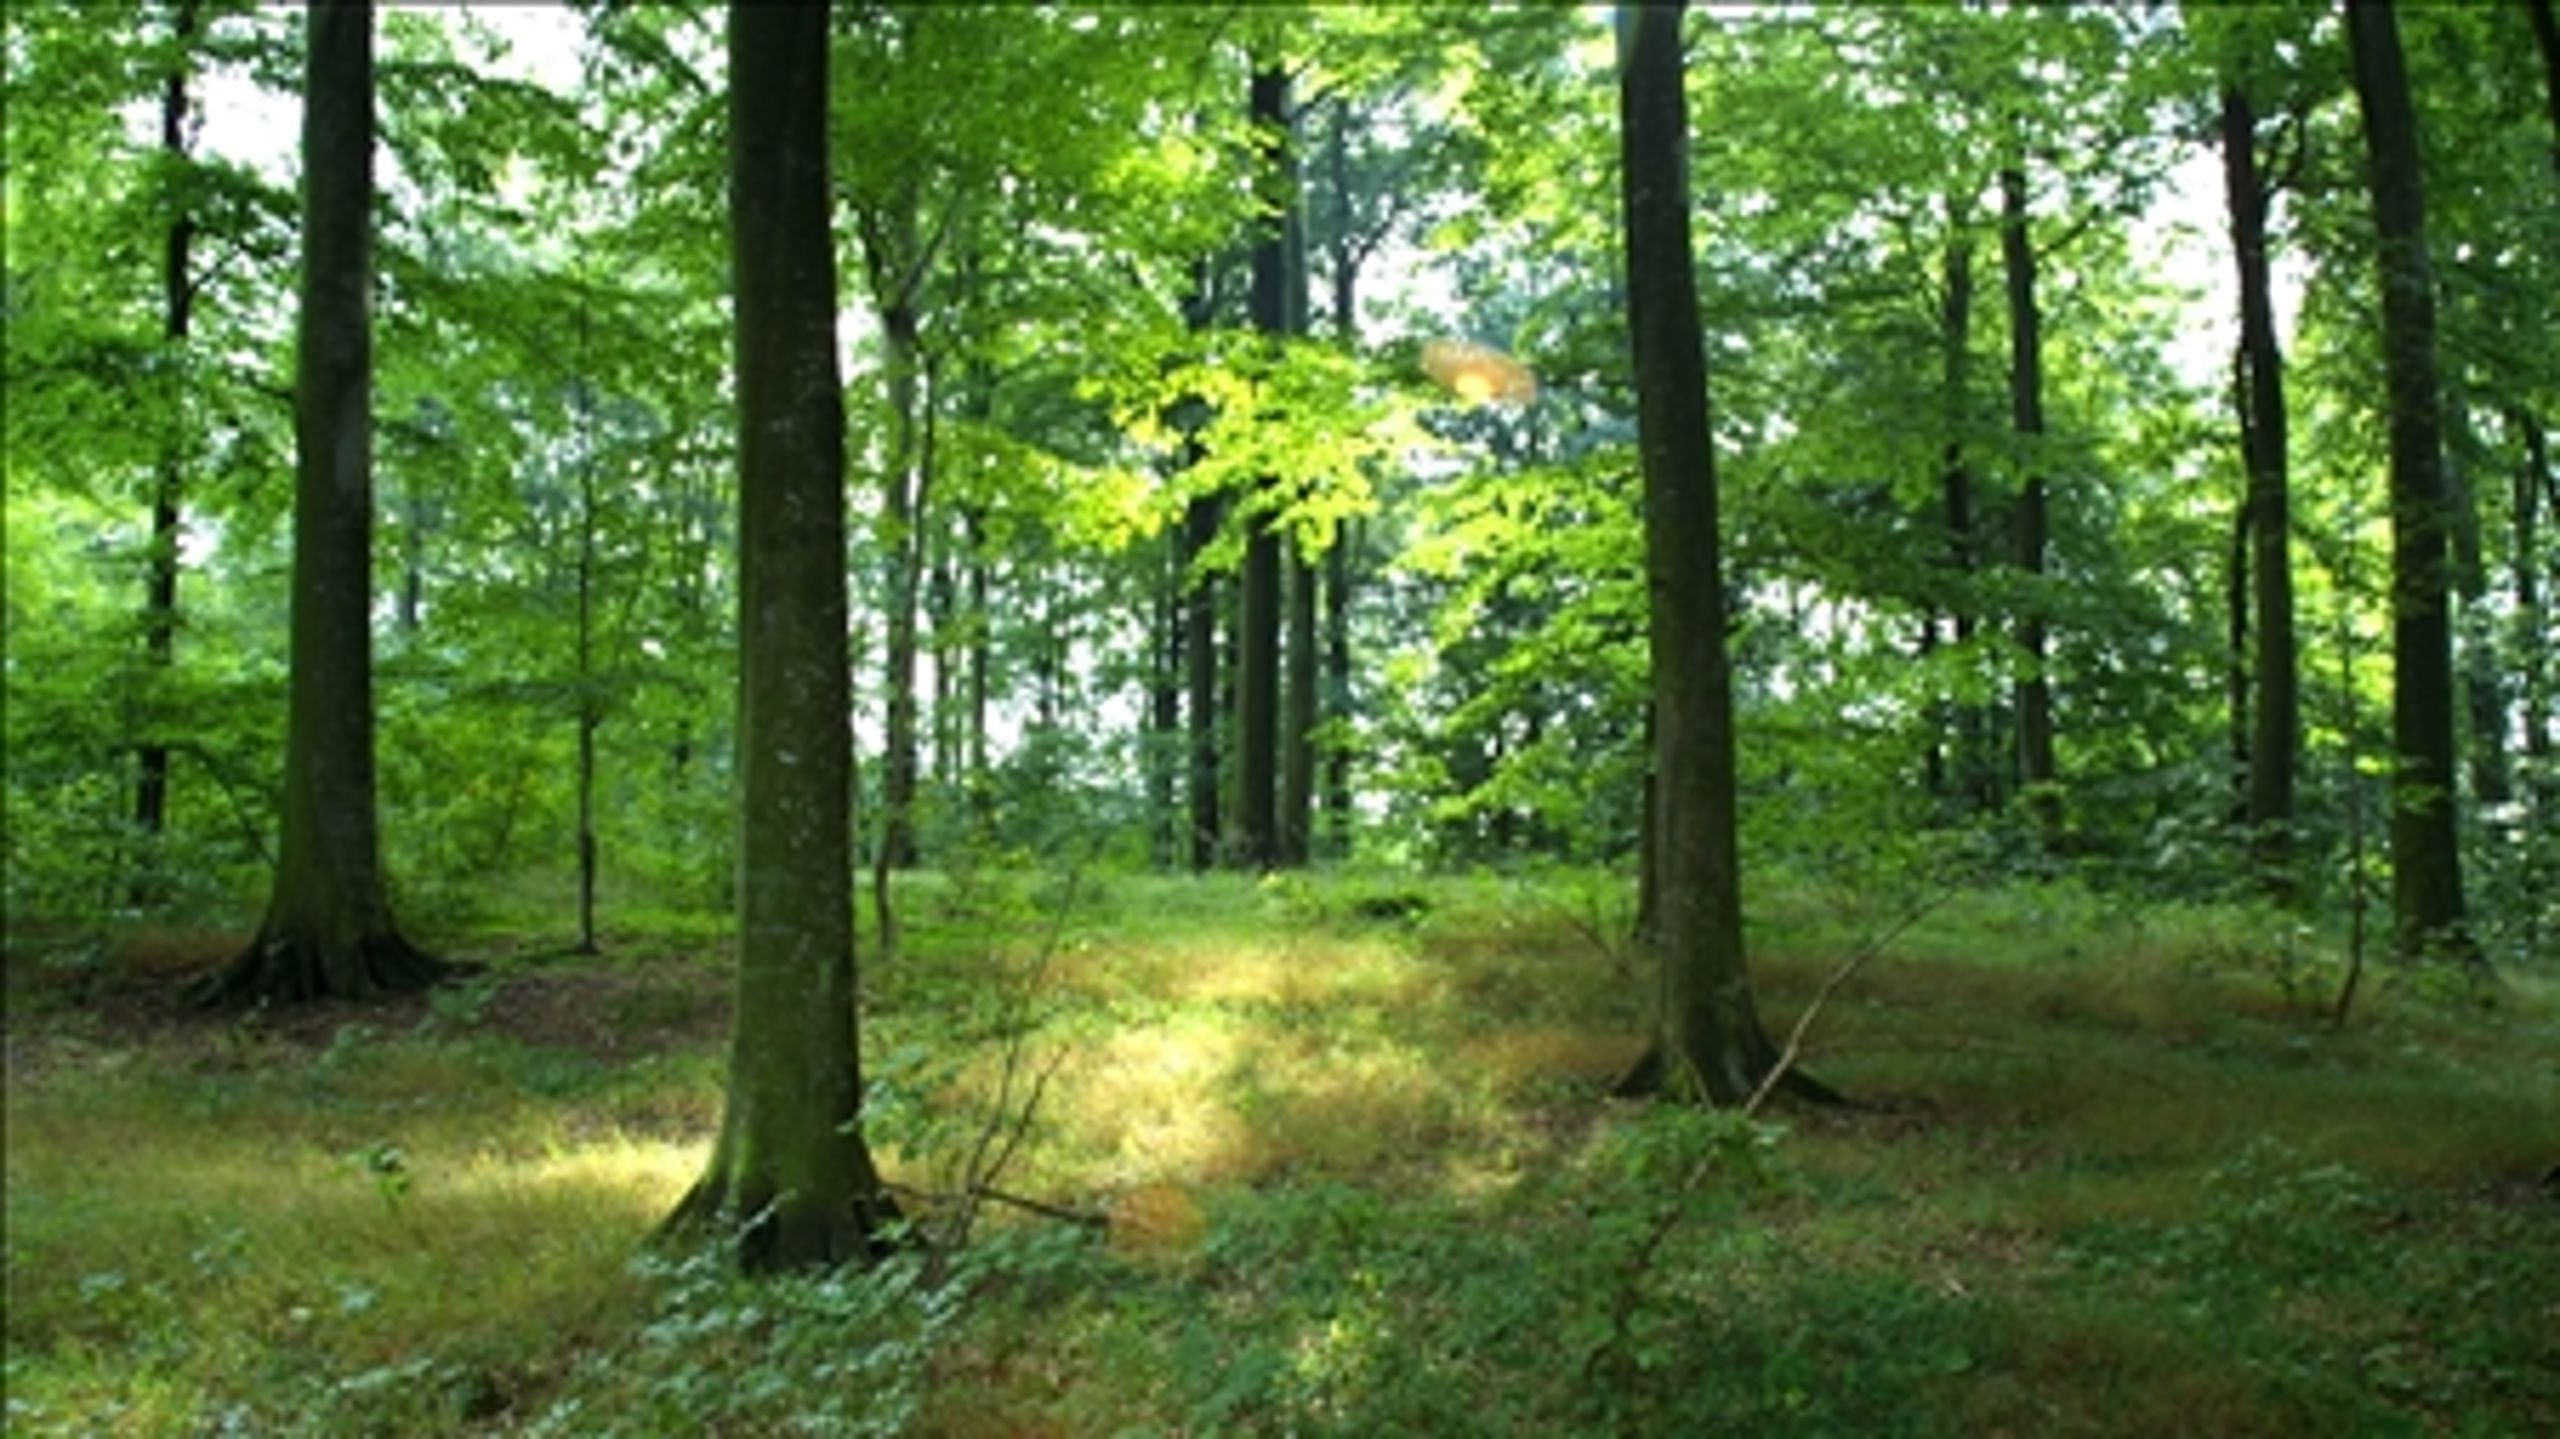 Skovene er blandt de steder i Danmark, hvor der lever flest arter. Men også det sted hvor det største antal truede arter findes.